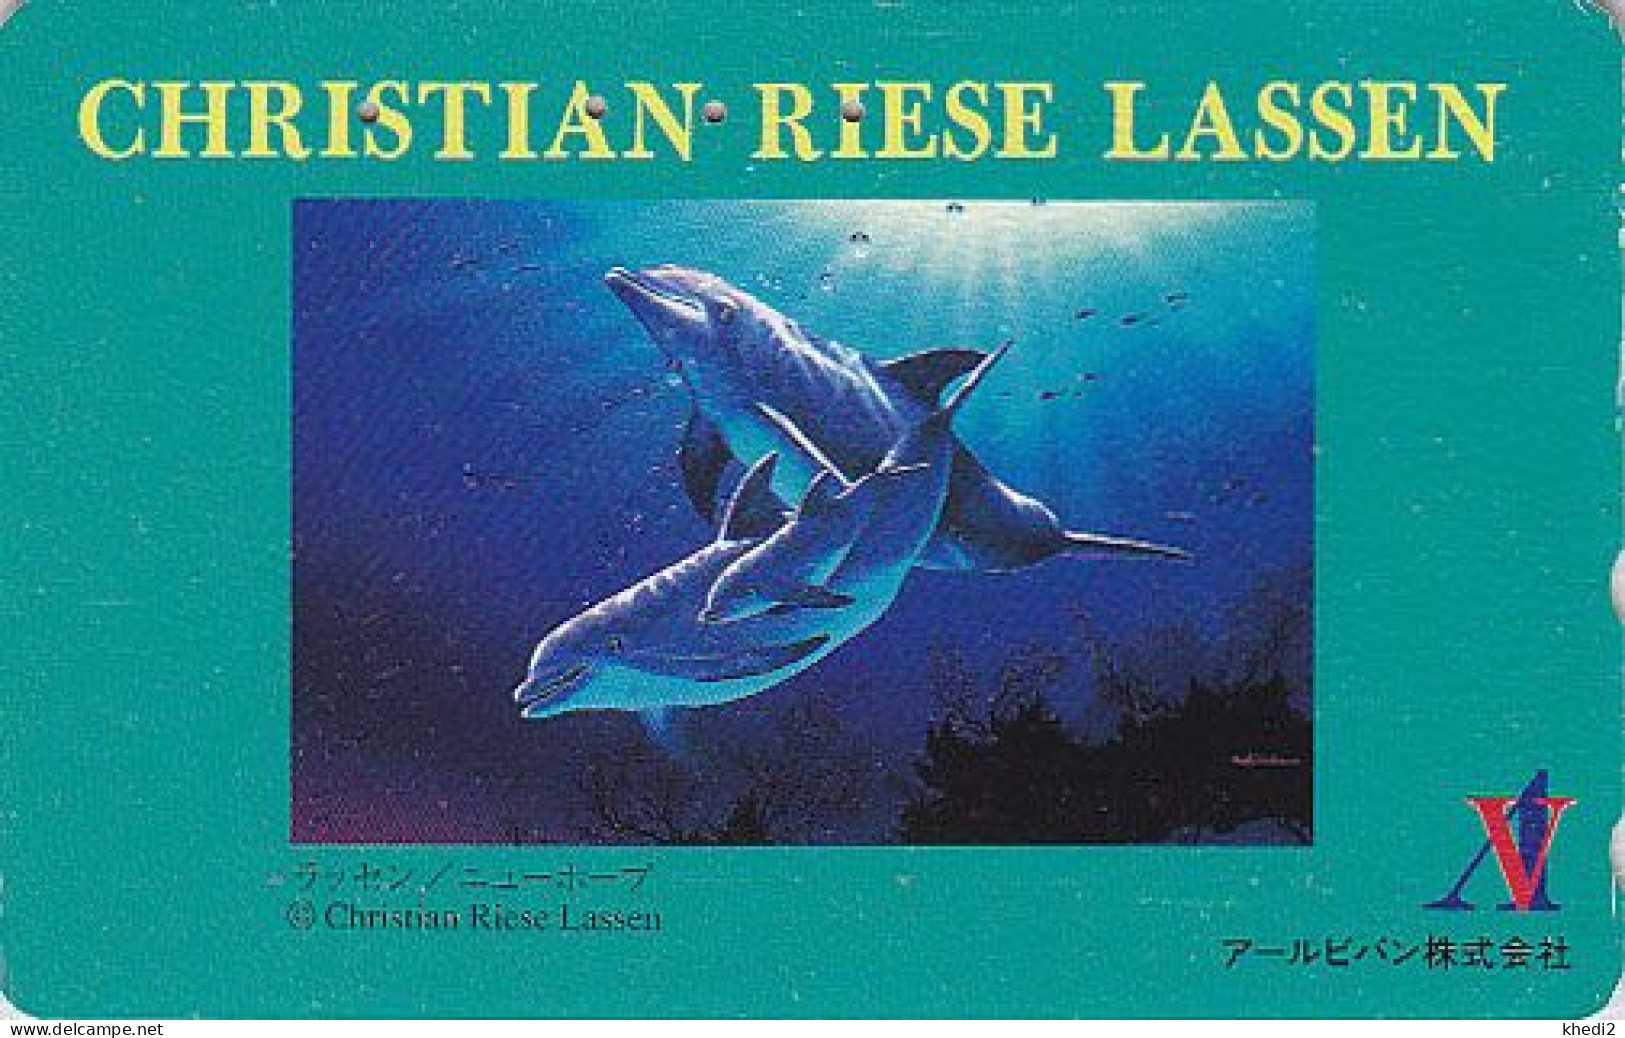 TC JAPON / 110-011 - Série Peinture CHRISTIAN RIESE LASSEN - ANIMAL DAUPHIN érotique - EROTIC DOLPHIN JAPAN Pc 02 - Dolphins